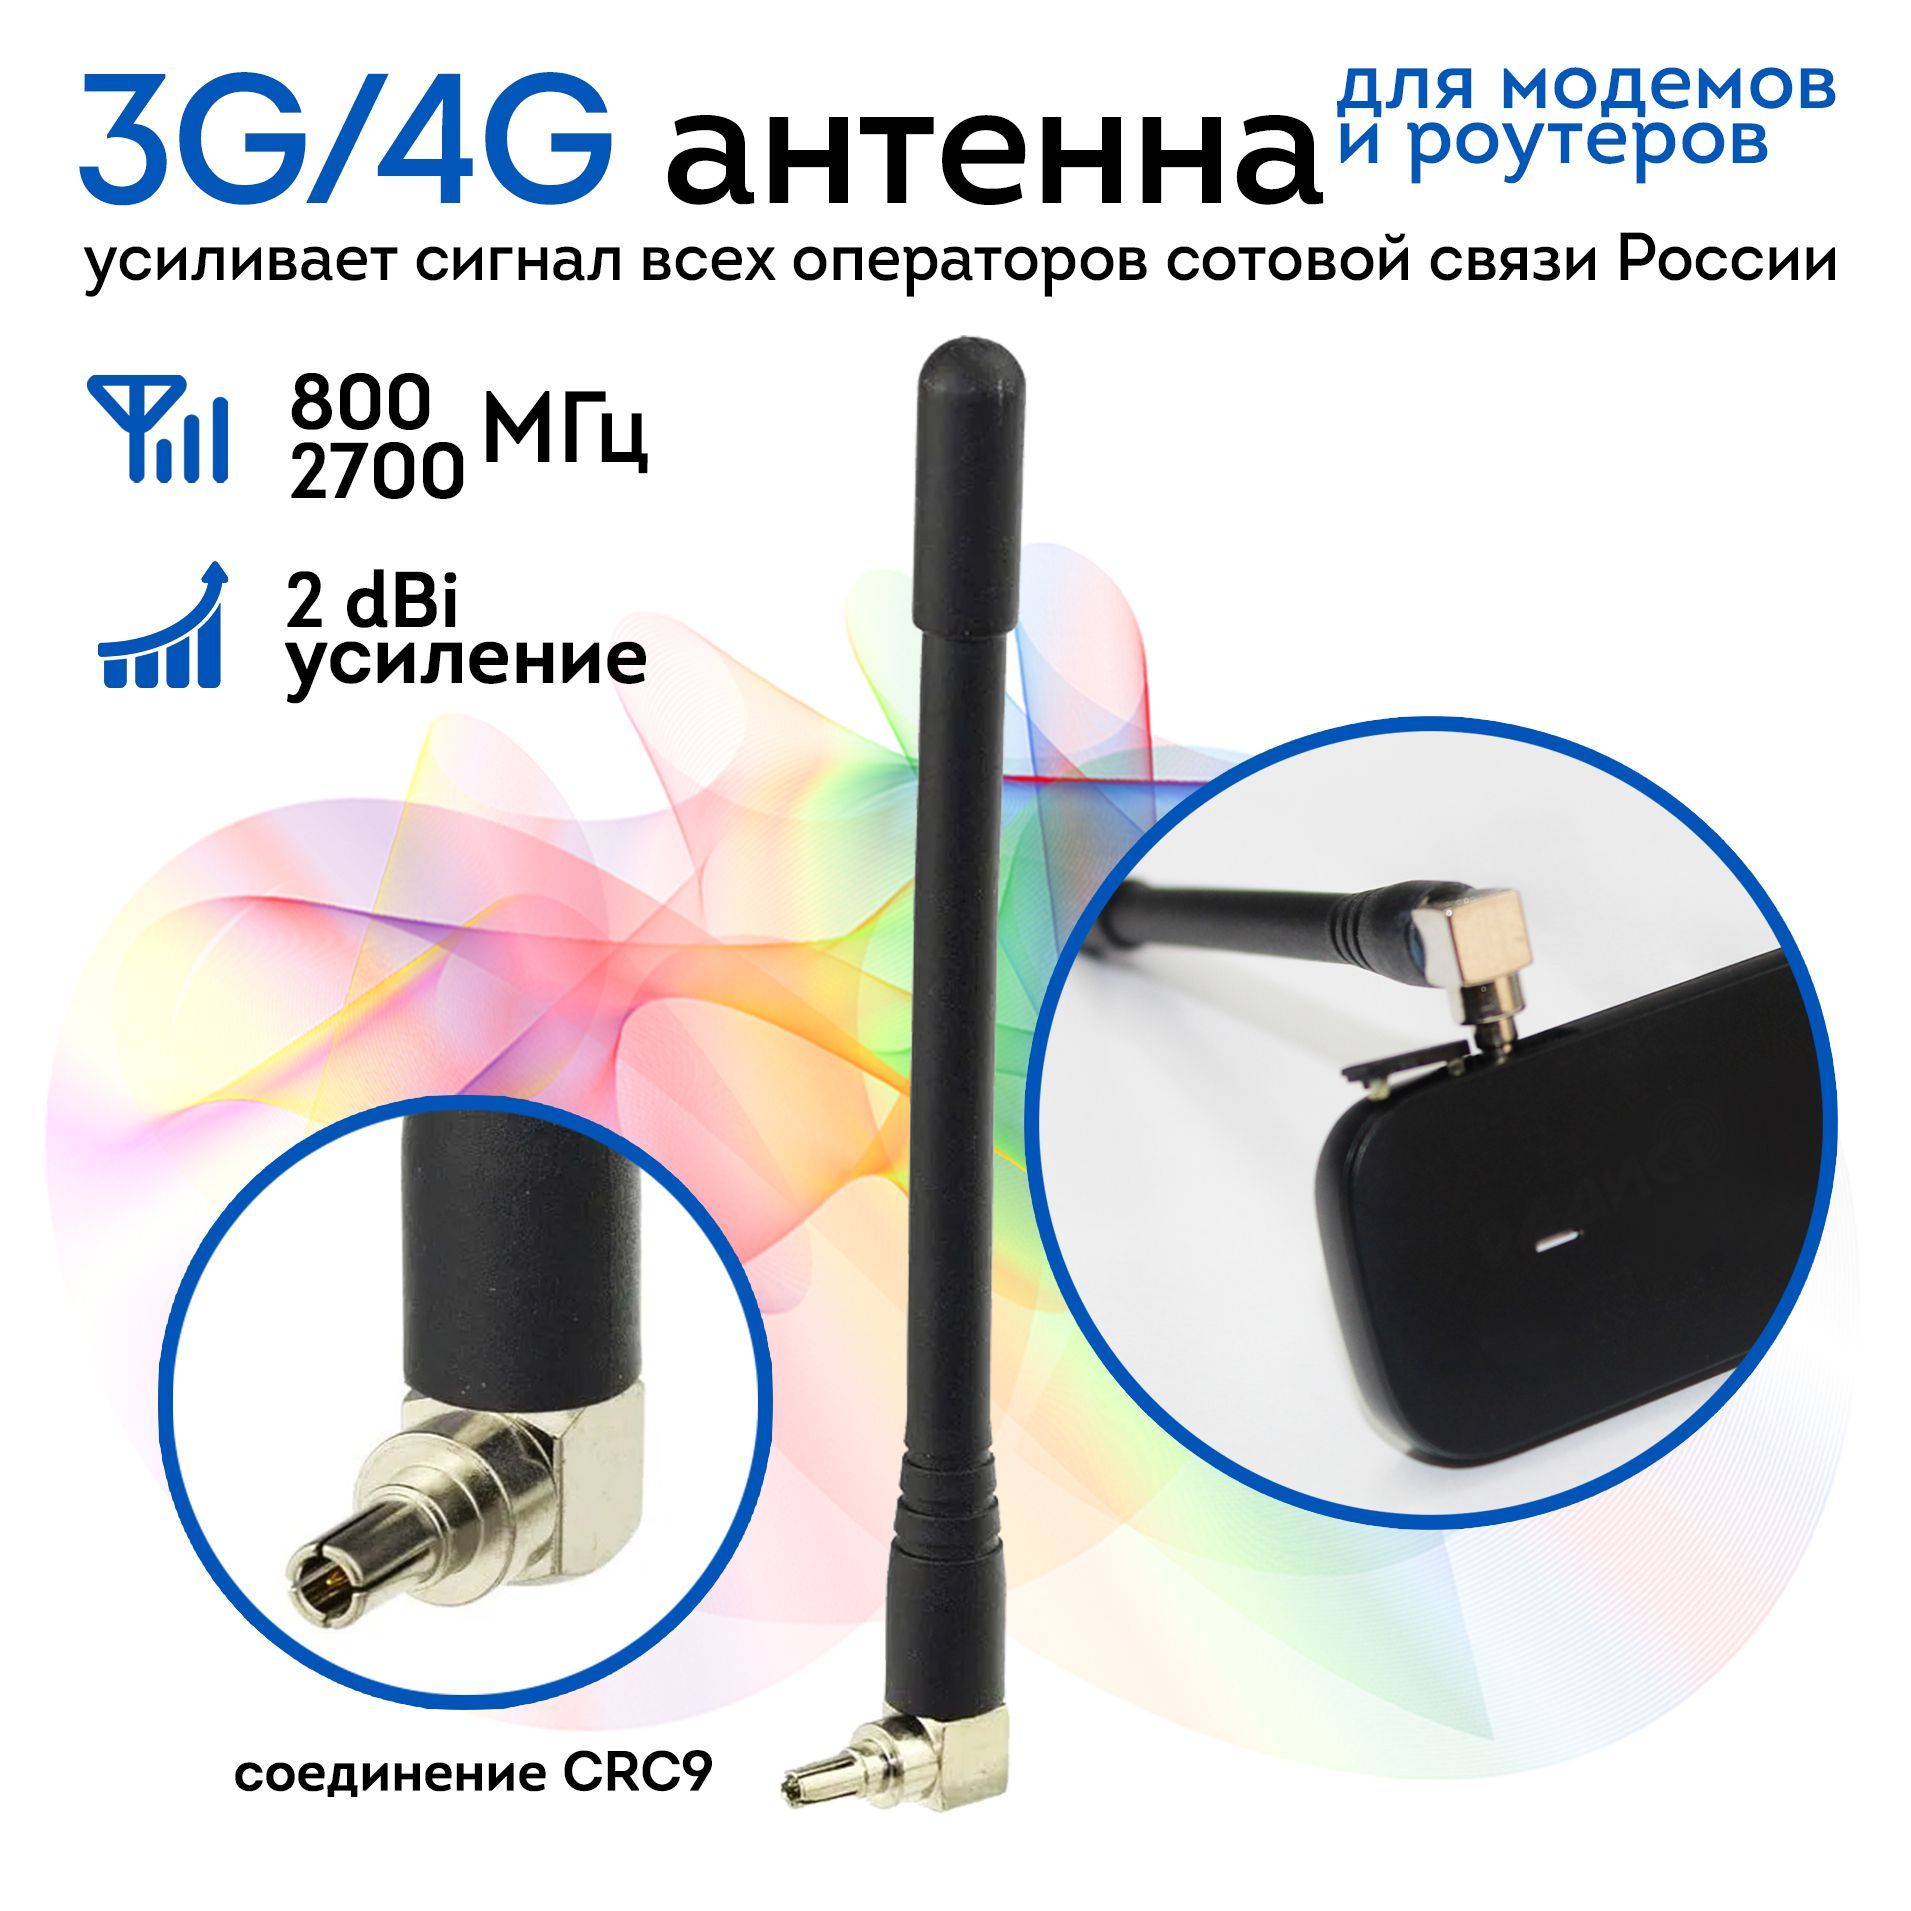 Простая всенаправленная антенна 3G 4G Wi-Fi